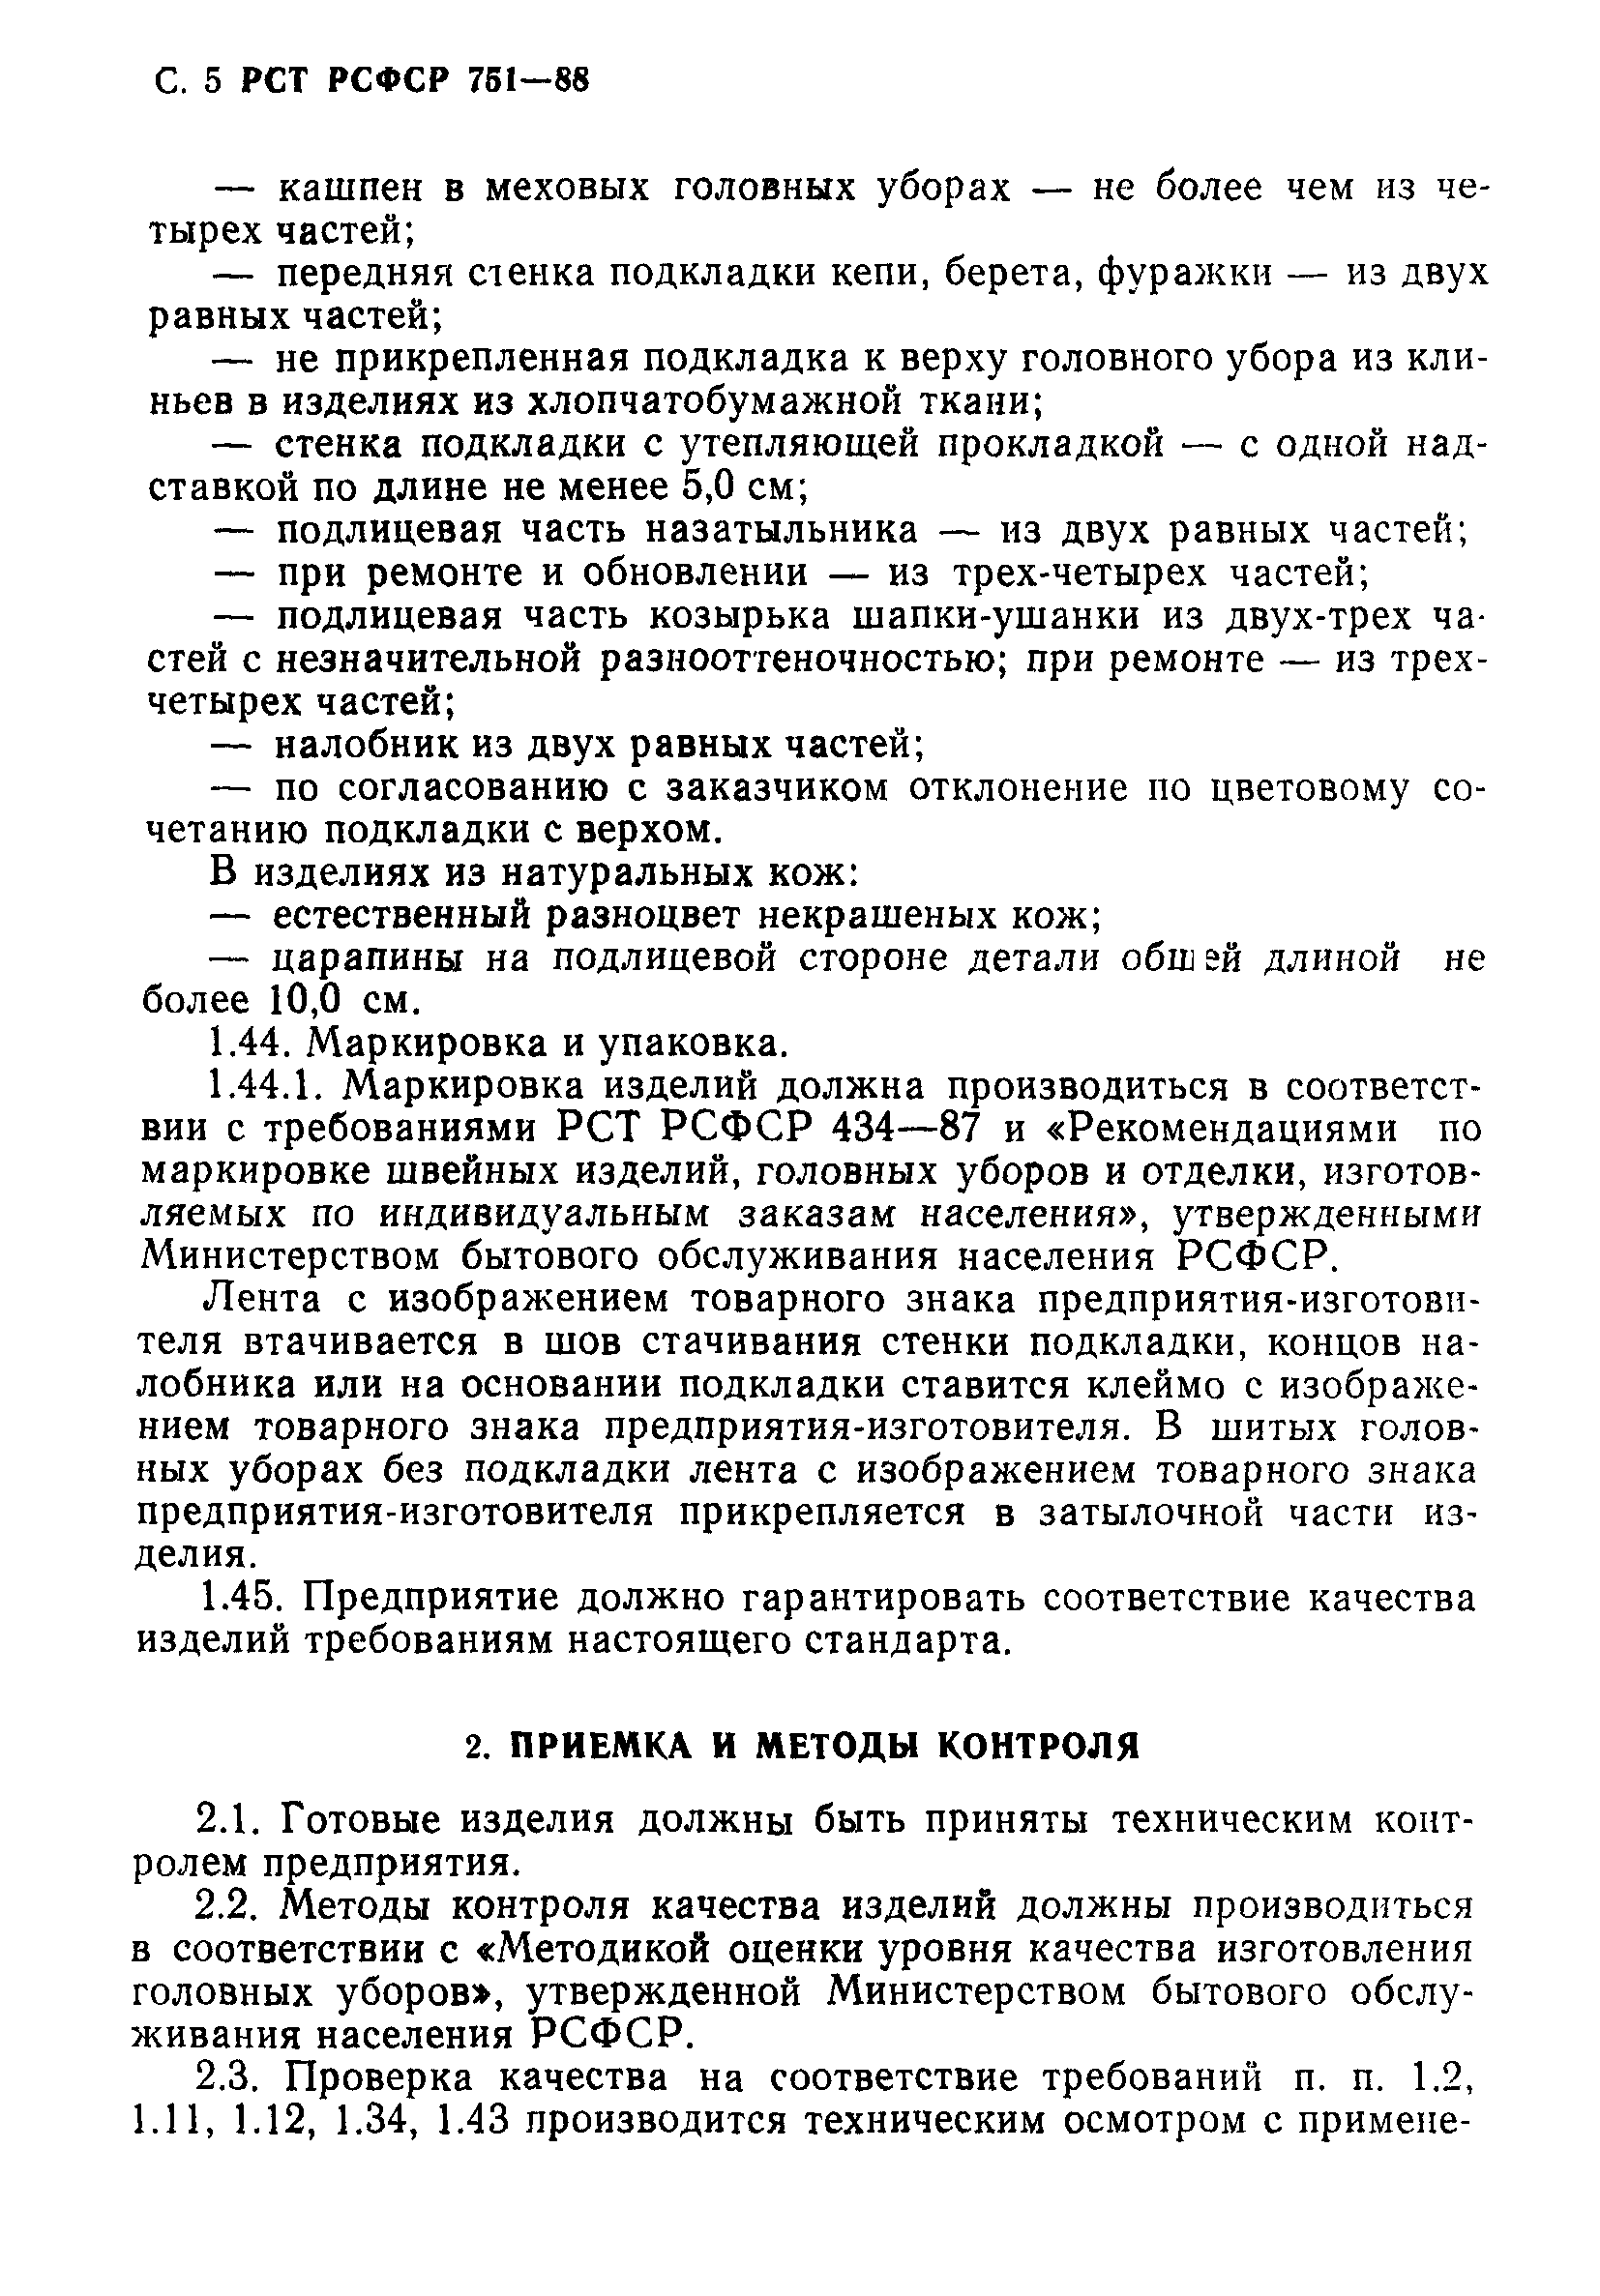 РСТ РСФСР 751-88